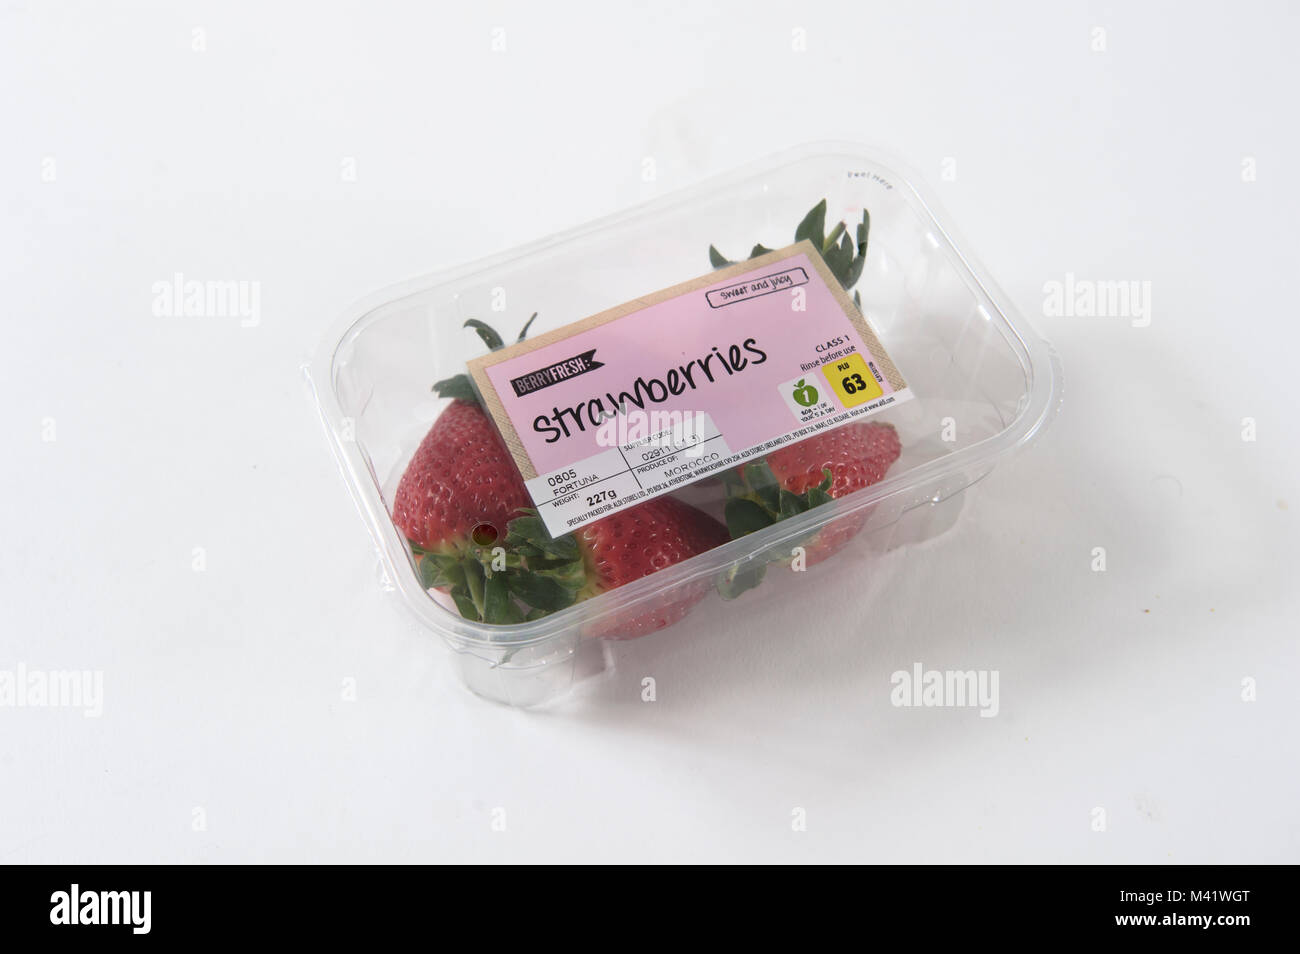 Aldi supermarket strawberries in a plastic container Stock Photo